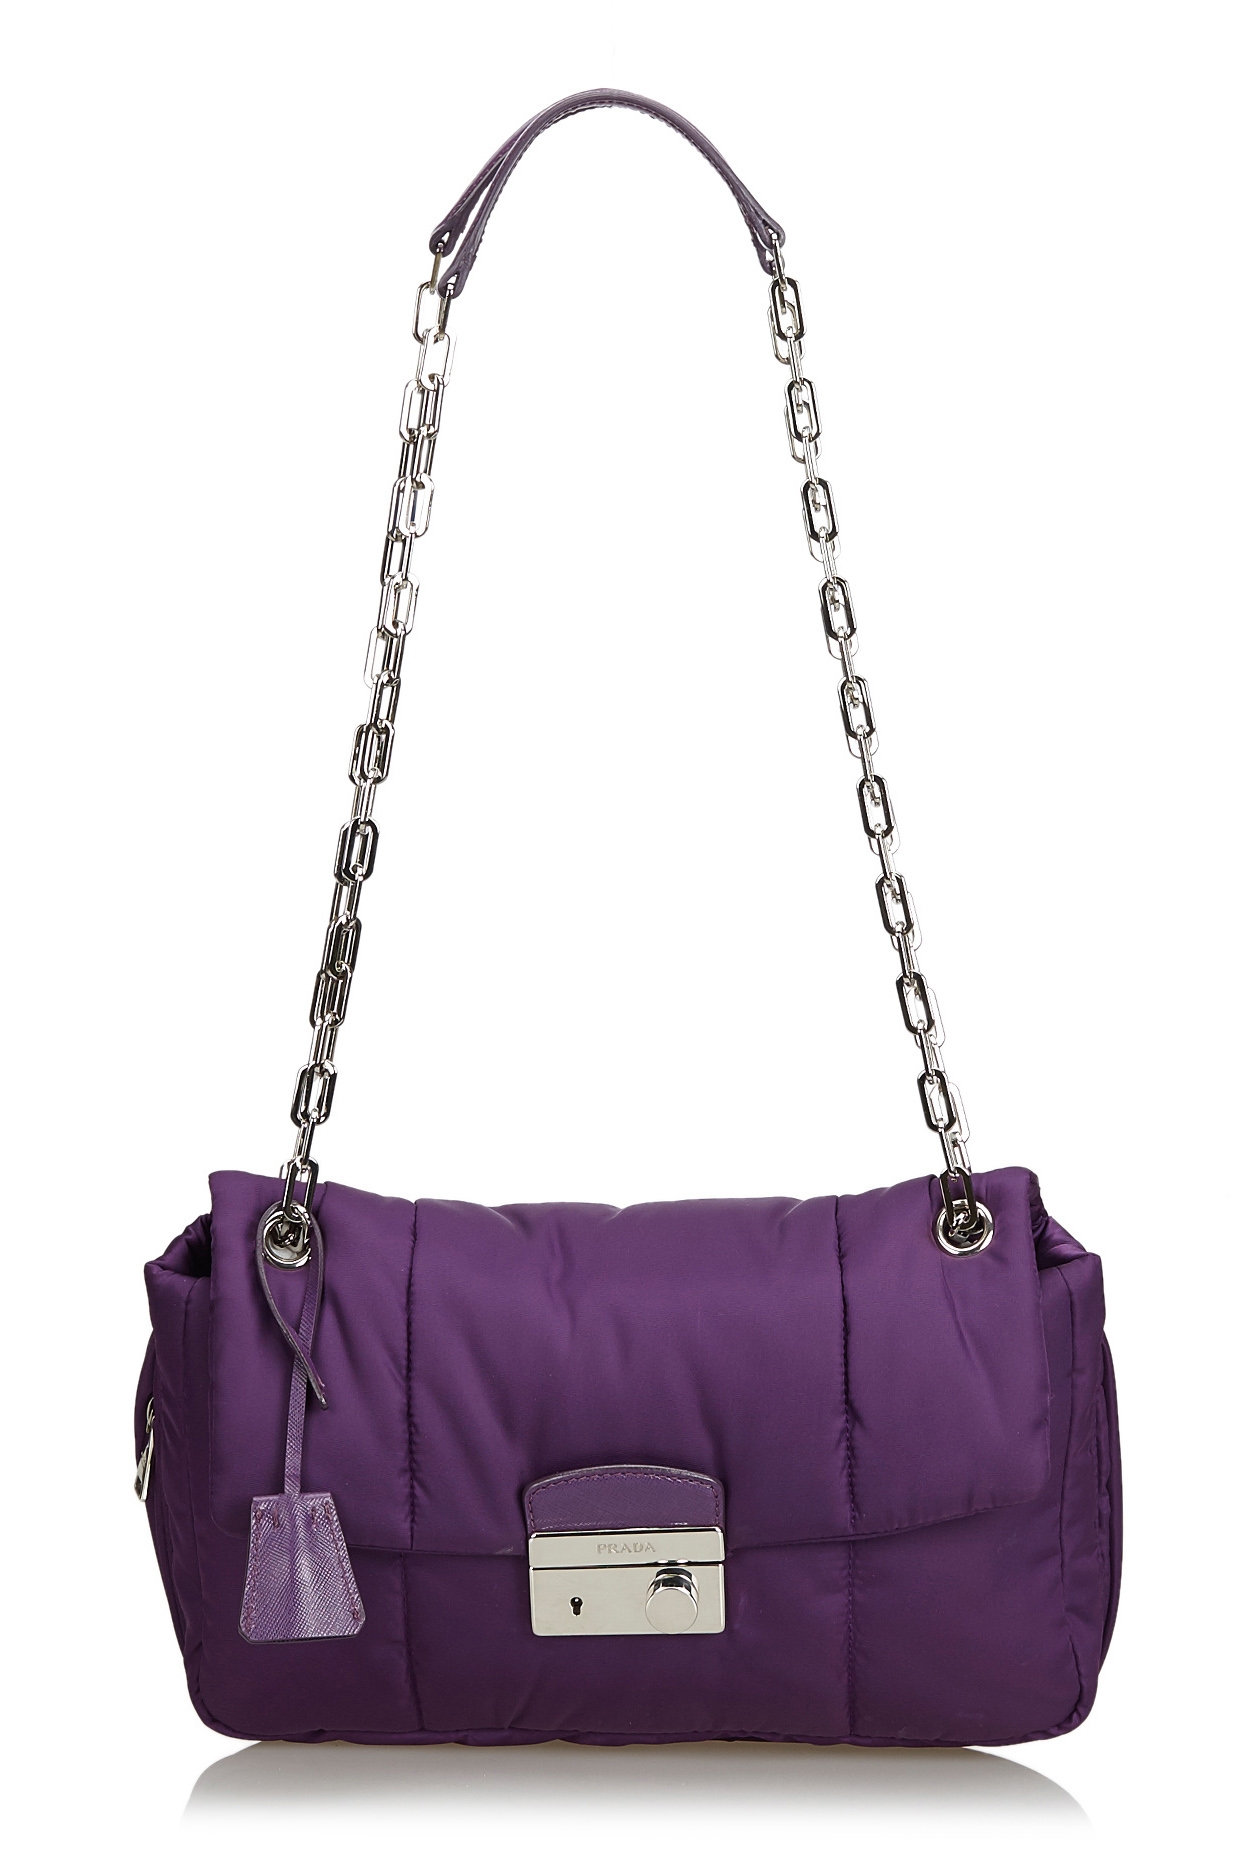 Prada Vintage - Nylon Bomber Shoulder Bag - Purple - Leather